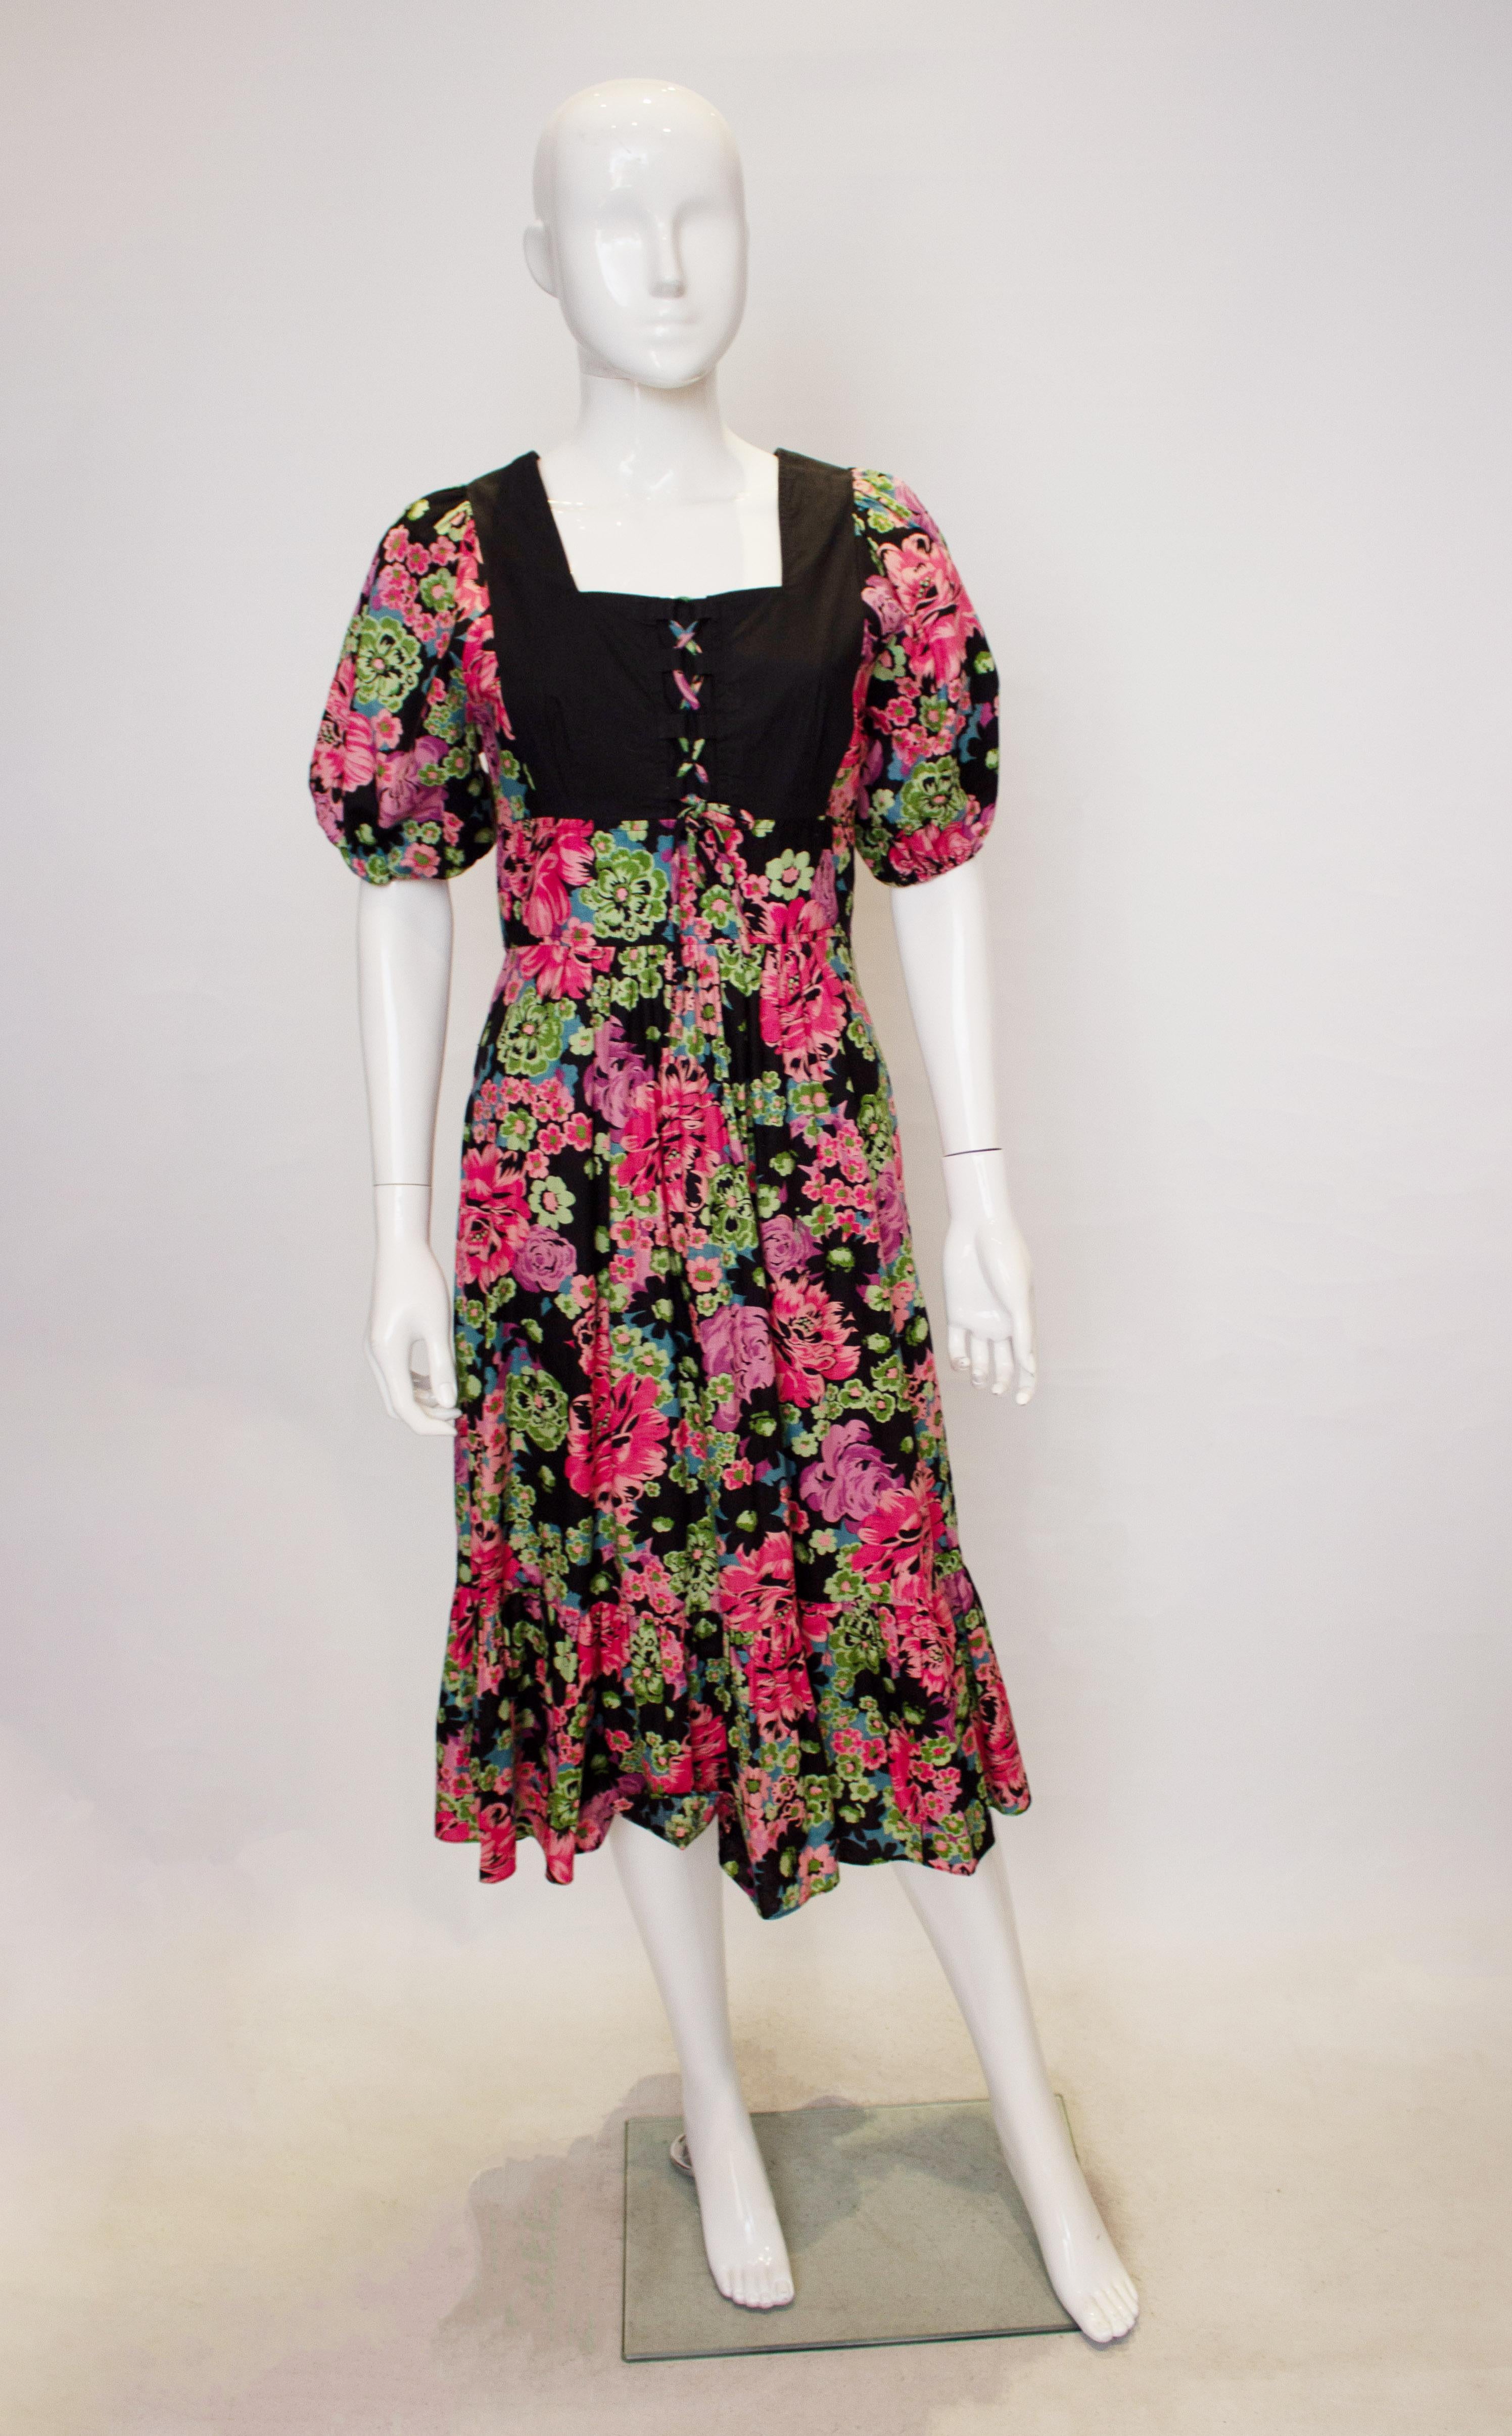 Ein tolles Vintage-Kleid für den Sommer von Susie G. Das Kleid hat einen quadratischen Ausschnitt und Rückenausschnitt, mit leicht gepufften Ärmeln. Es hat eine zentrale Öffnung am Rücken, Rüschen am Saum und eine Schnürung am Mieder.